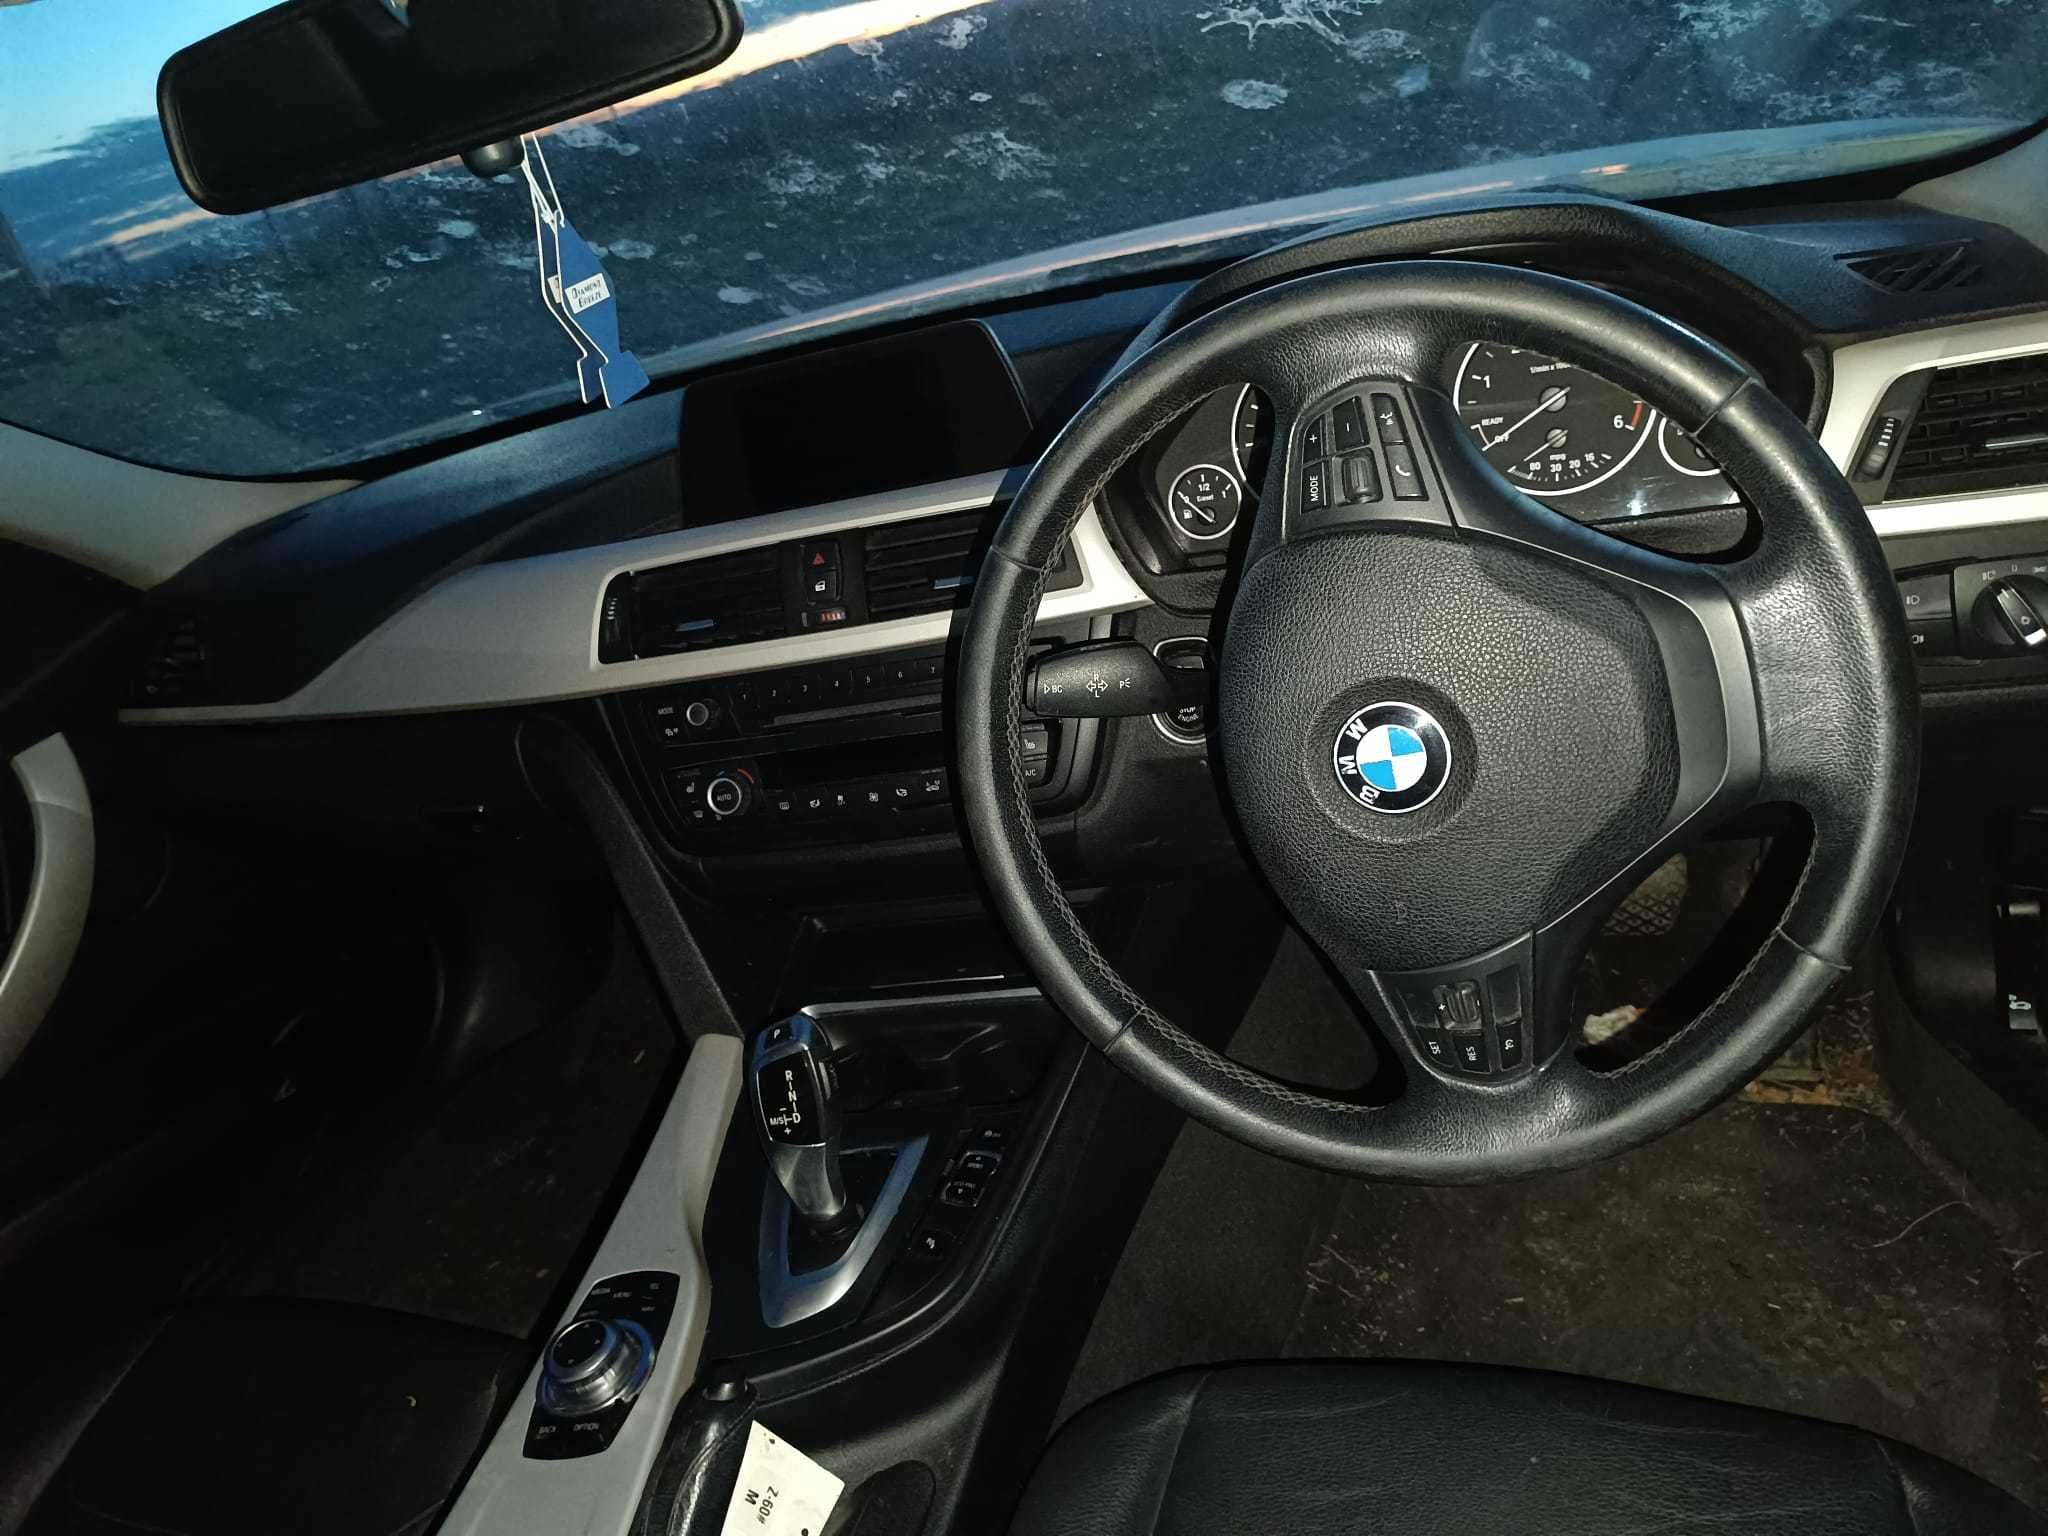 Dezmembrez BMW 320D 2013 181 cp alb perlat